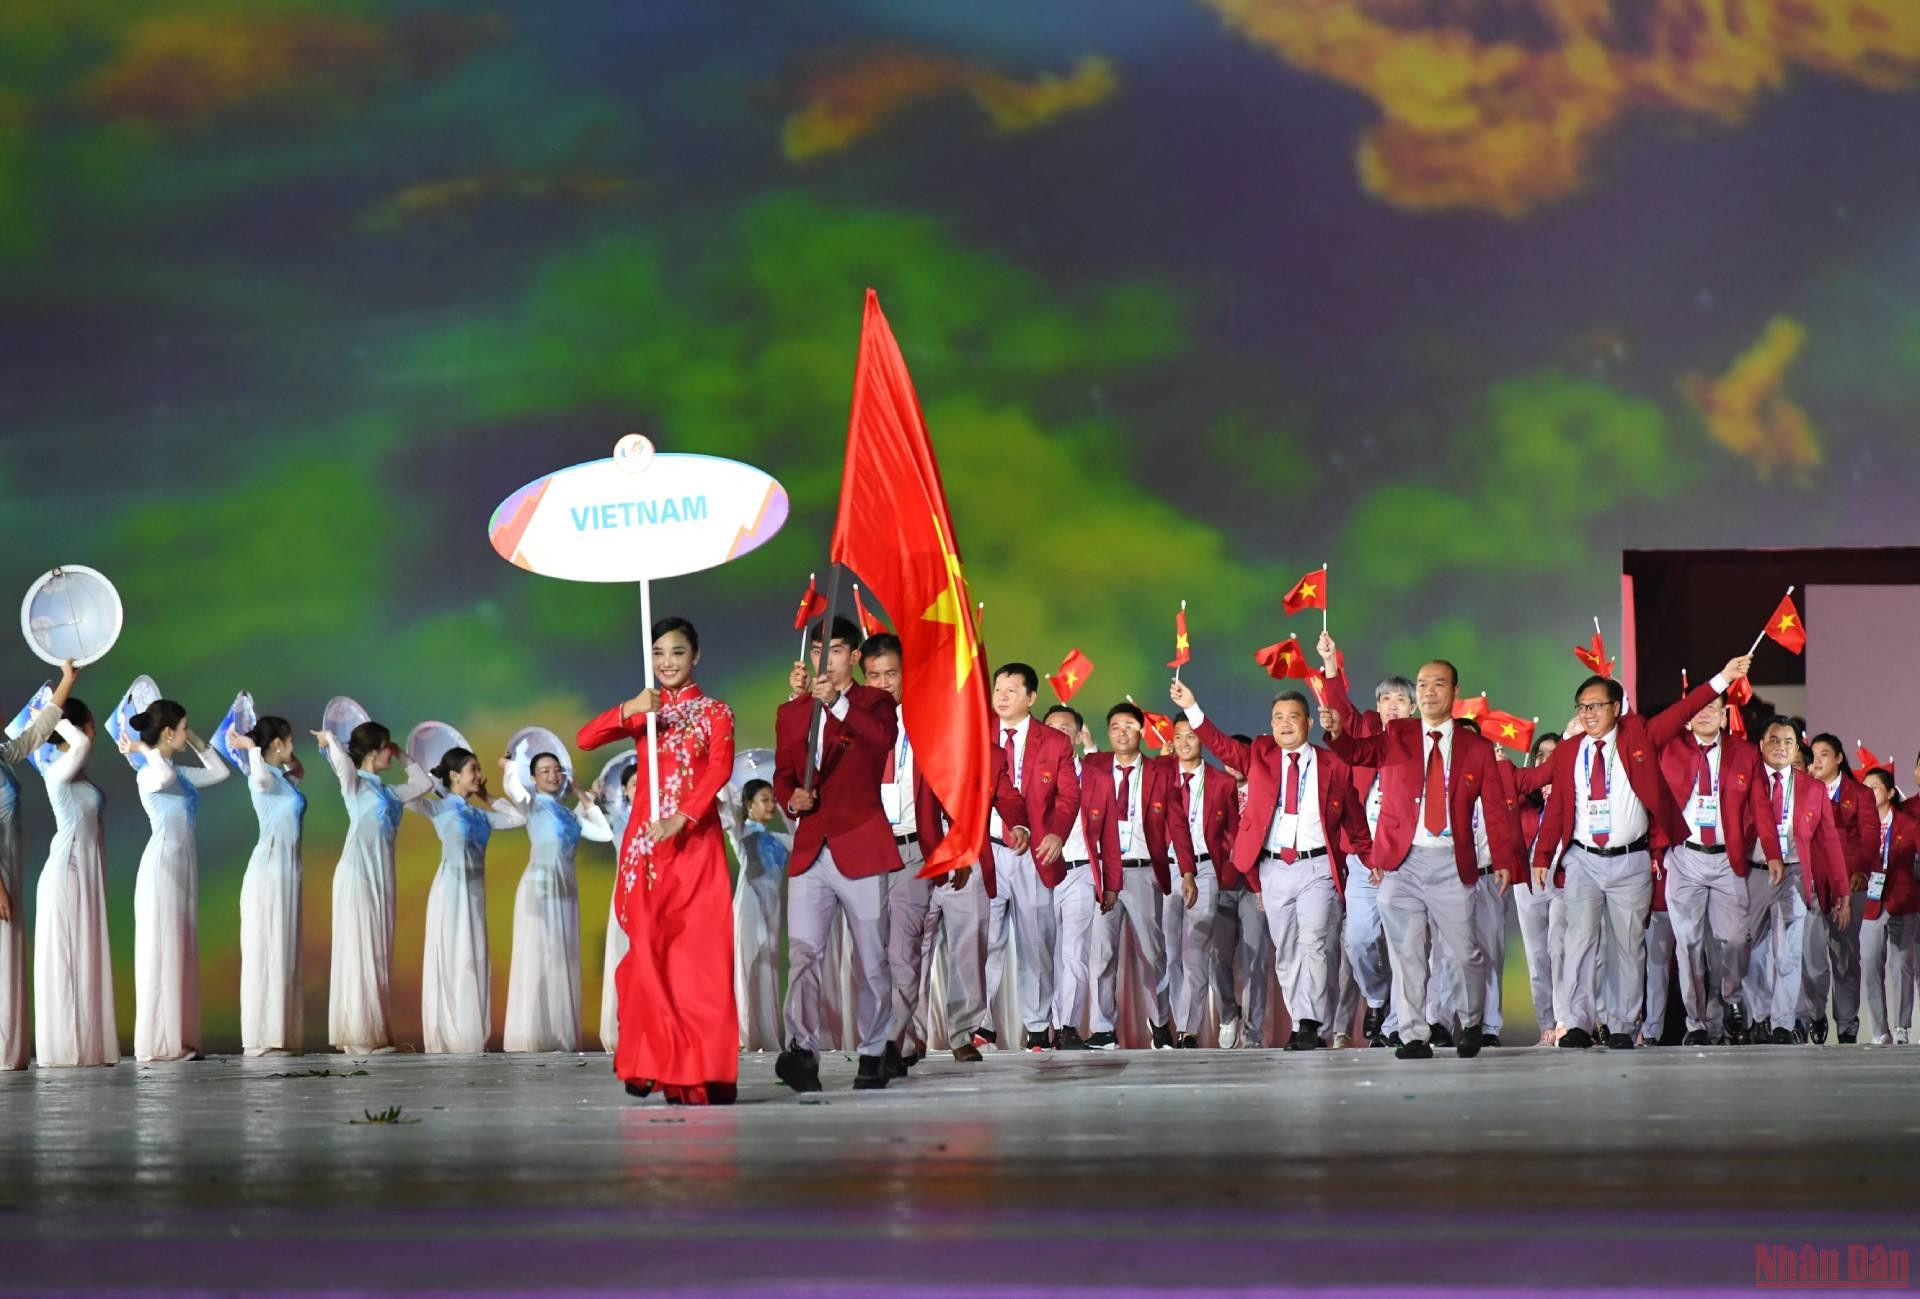 Kình ngư Nguyễn Huy Hoàng được trao vinh dự cầm cờ cho Đoàn Thể thao Việt Nam. Tại SEA Games 31, Việt Nam đăng ký 951 VĐV, nhiều nhất trong 11 đoàn thể thao. Trong đó, có 532 VĐV nam và 419 VĐV nữ. Đoàn Thể thao Việt Nam tranh tài 40 môn thể thao ở kỳ thế vận hội này.